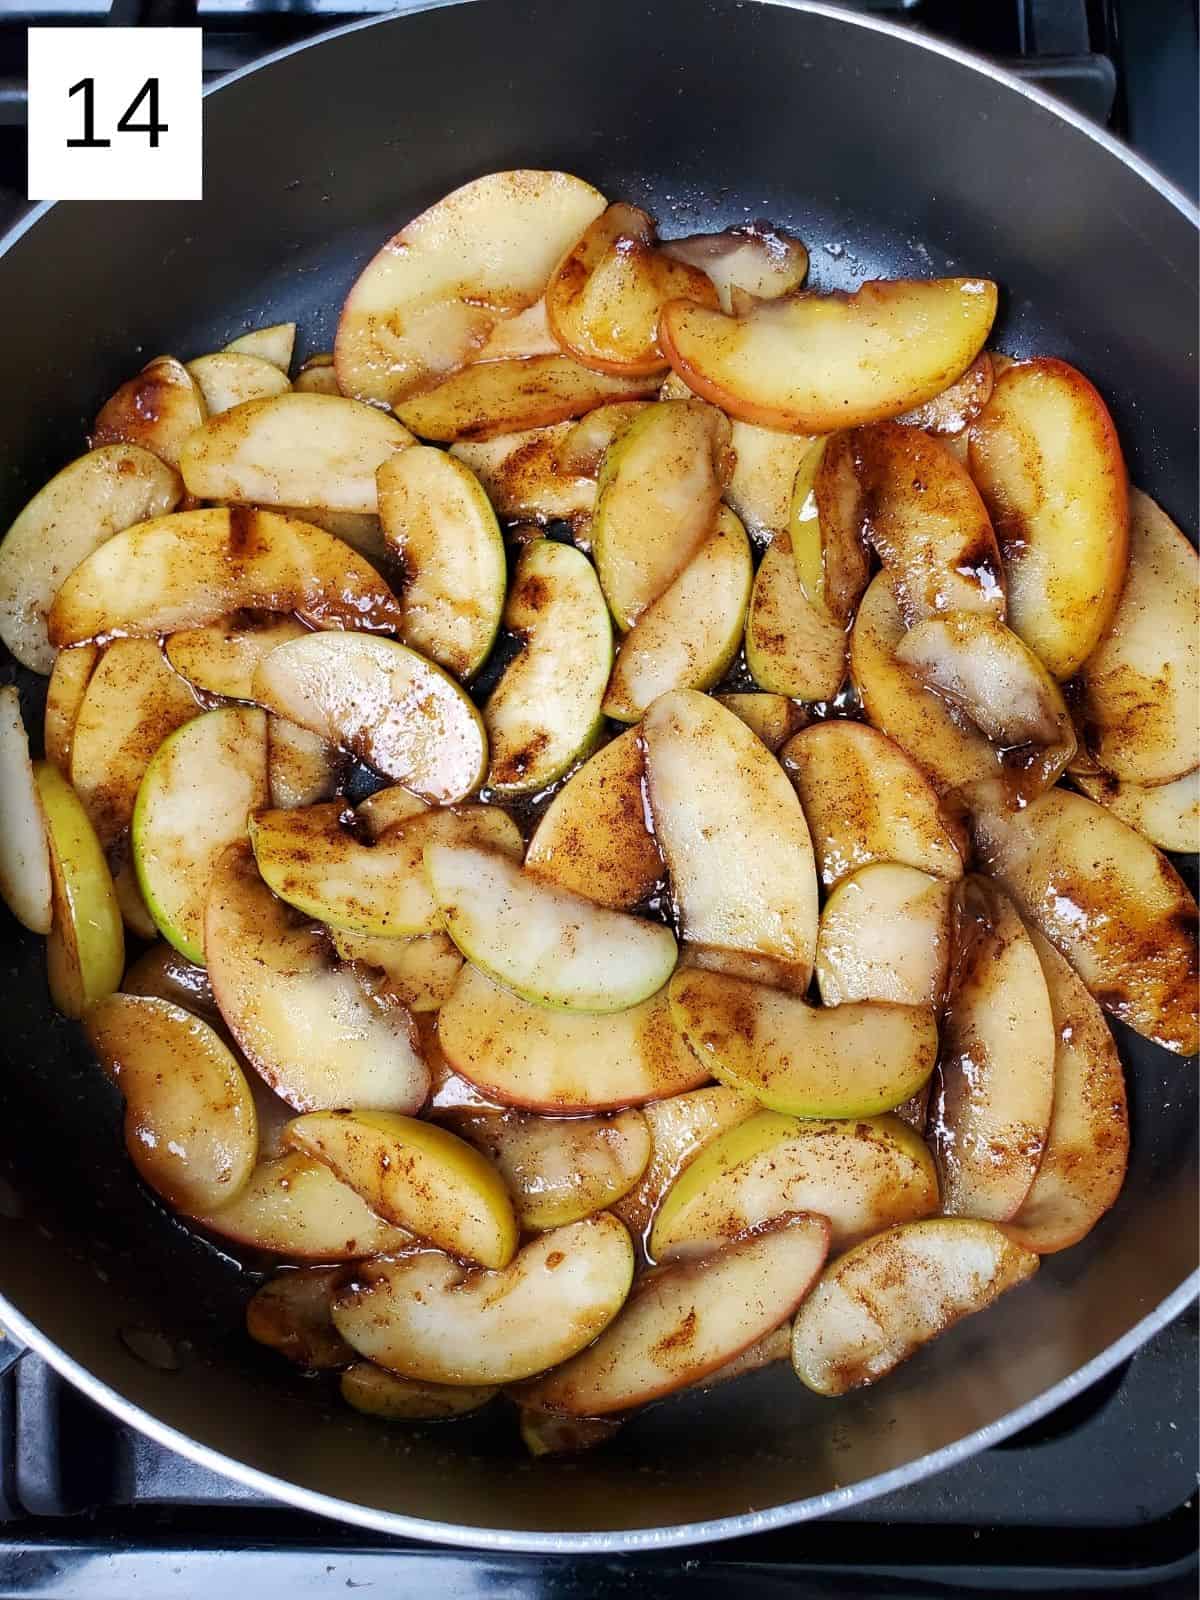 seasoned slices of apples in a pan.